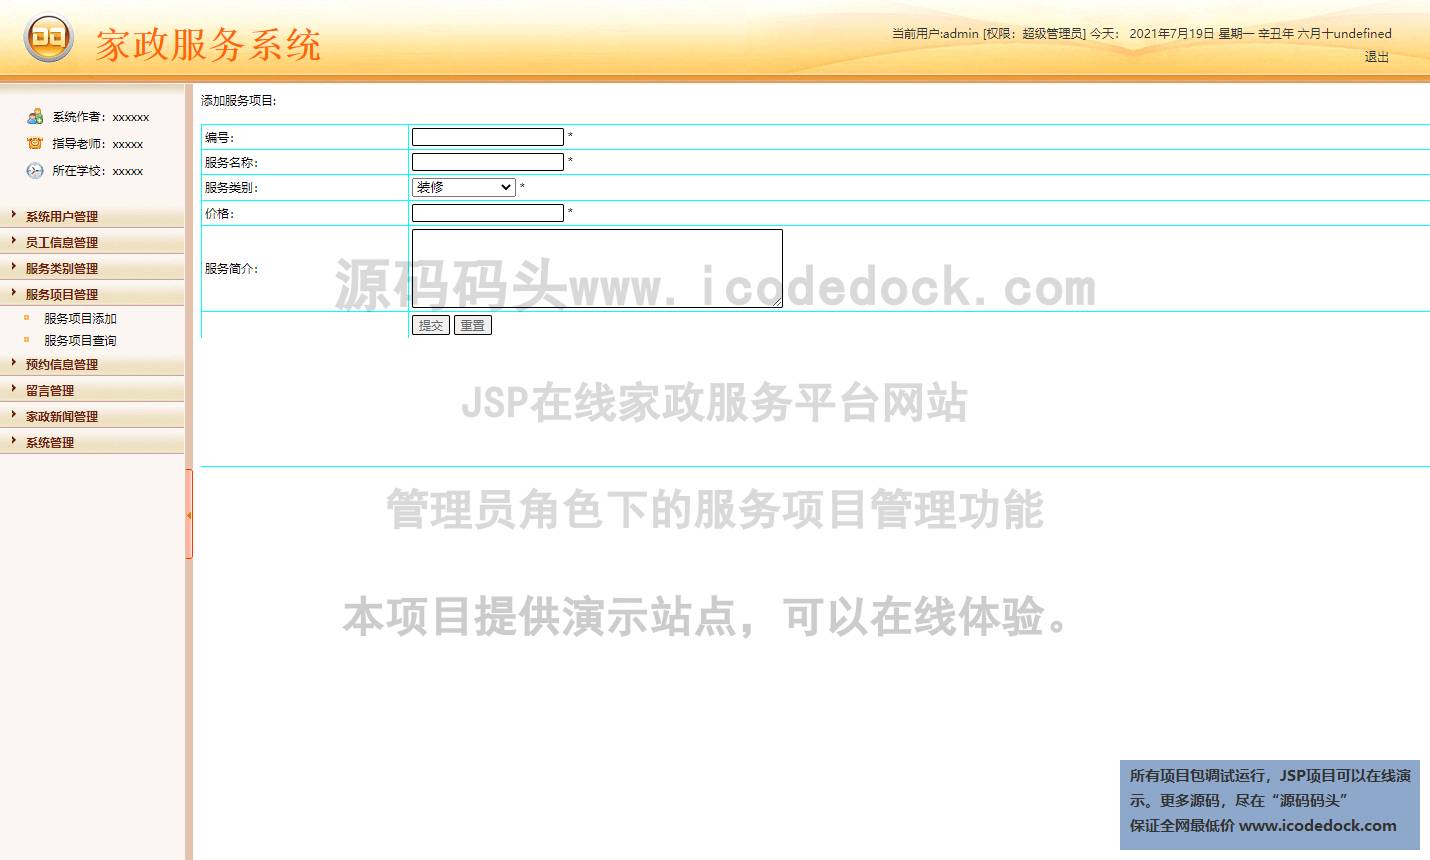 源码码头-JSP在线家政服务平台网站-管理员角色-服务项目管理